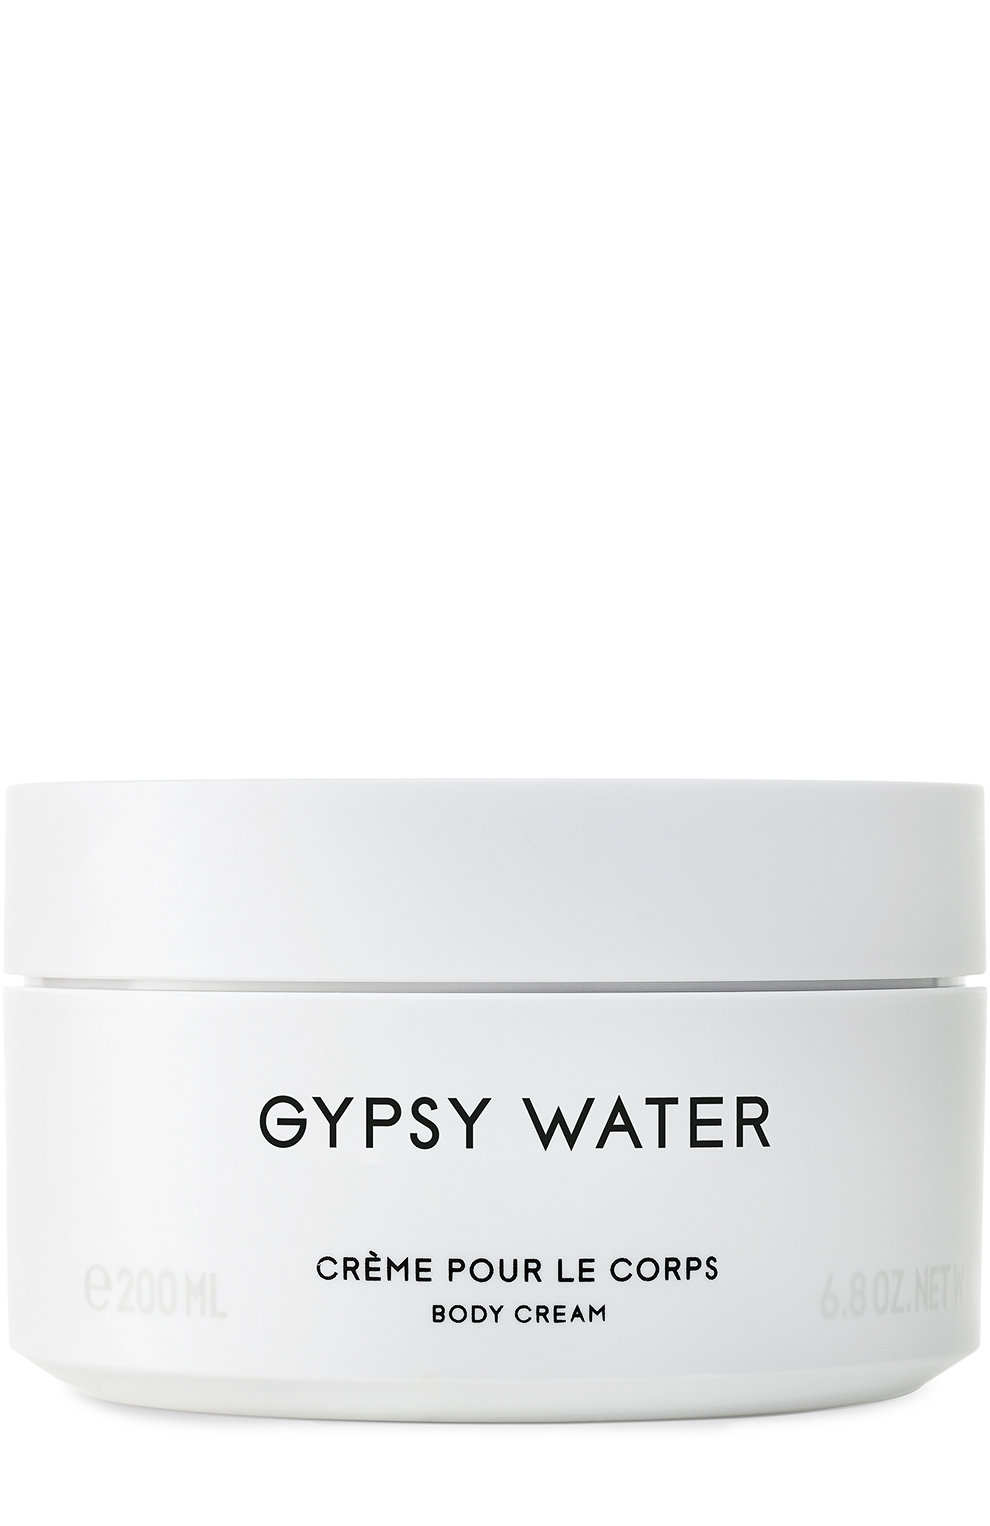 Крем для тела Byredo Gypsy Water «Цыганская вода»